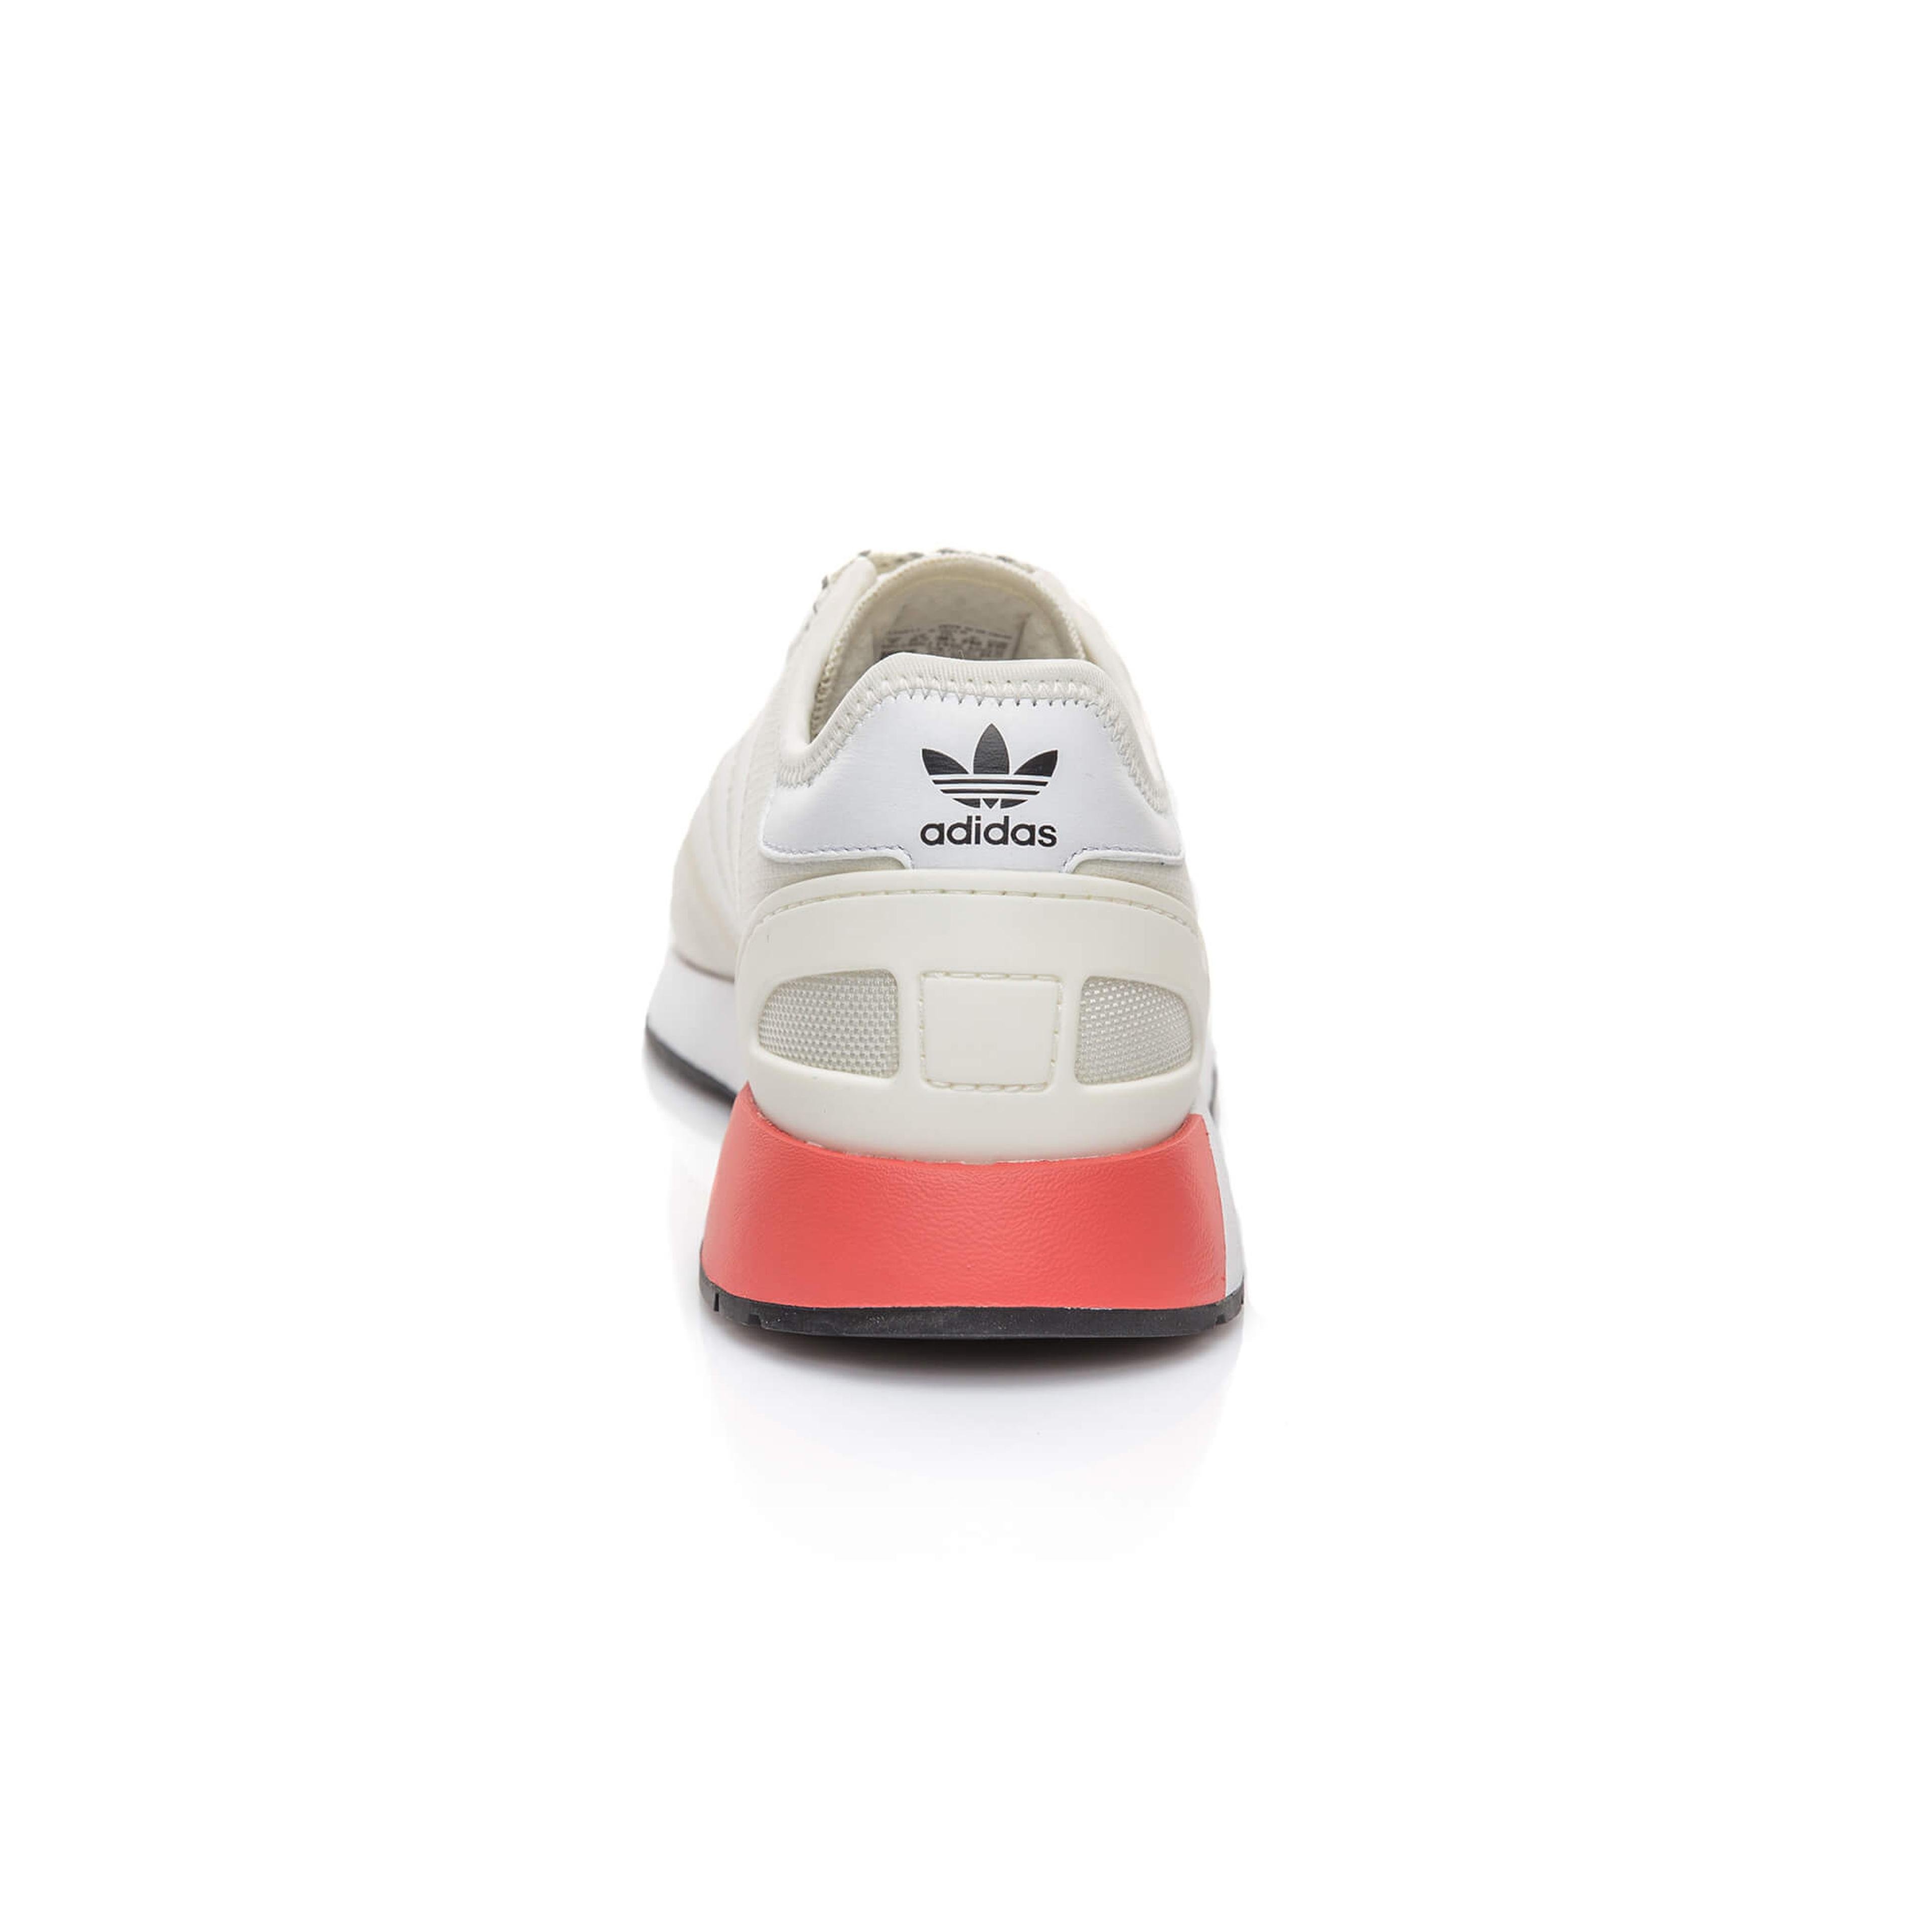 adidas N 5923 Kadın Beyaz Spor Ayakkabı